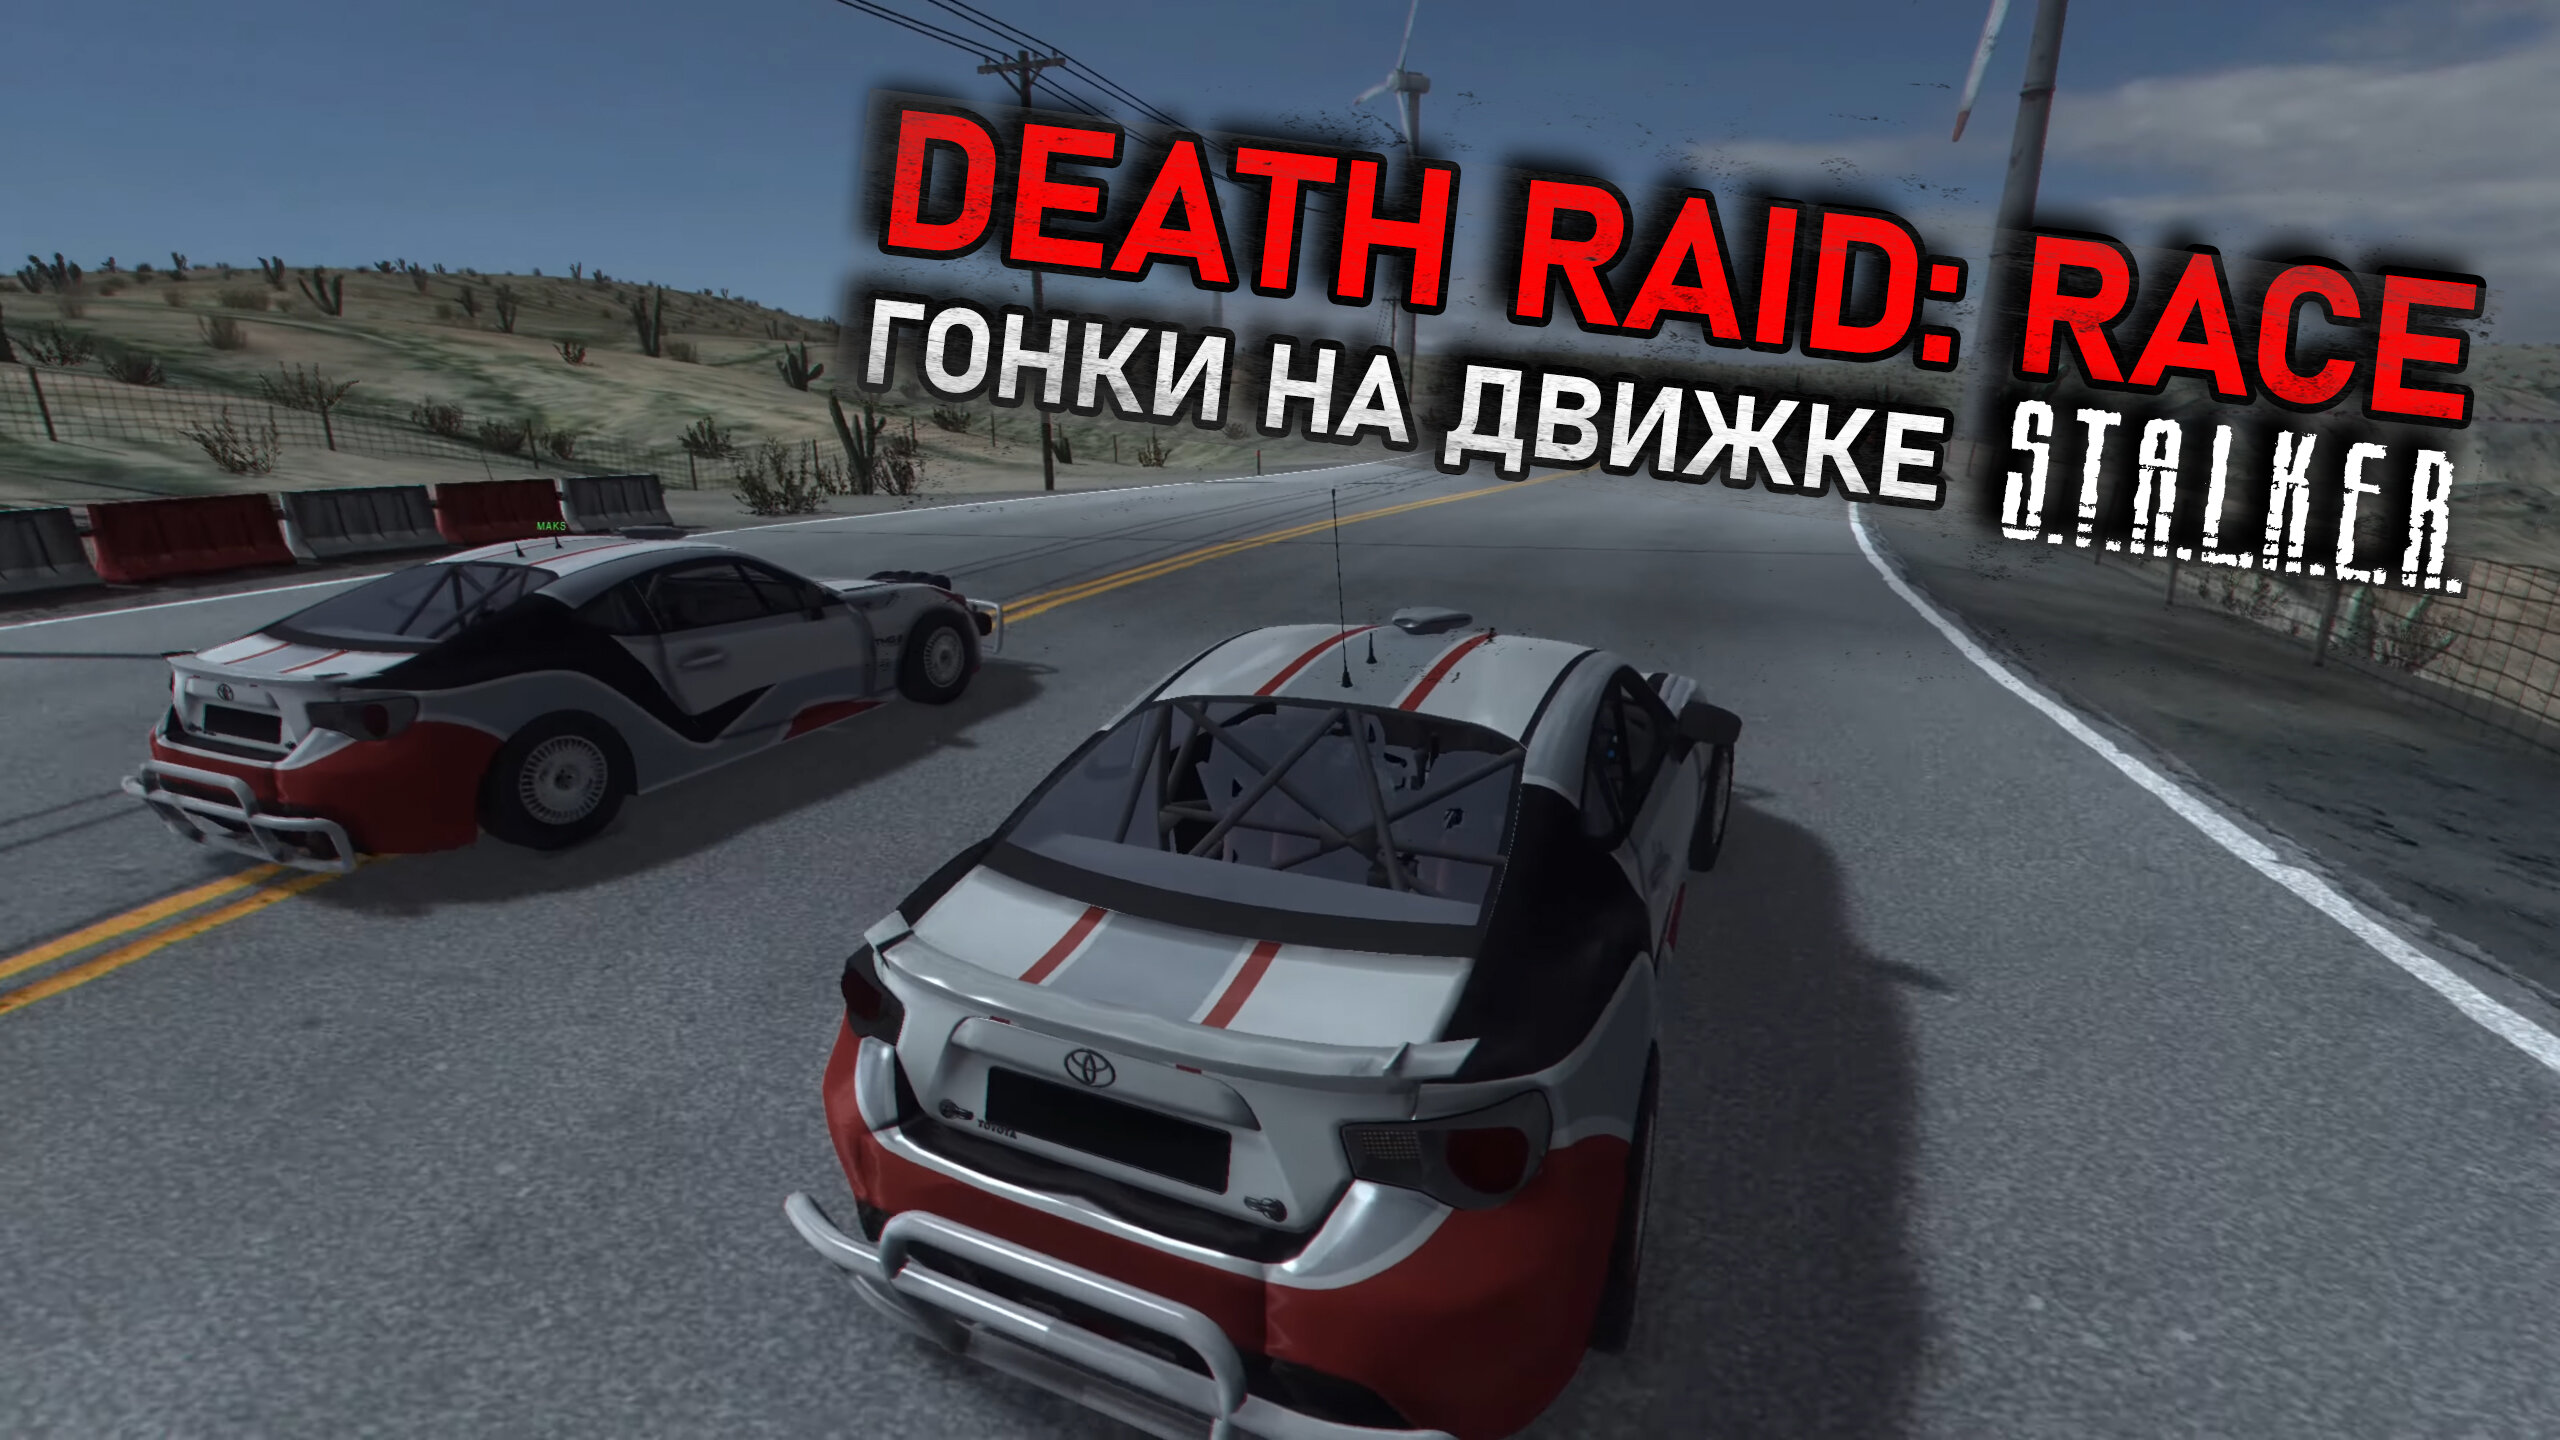 Death Raid: Race - гонки на движке S.T.A.L.K.E.R. (Нарезка стрима)